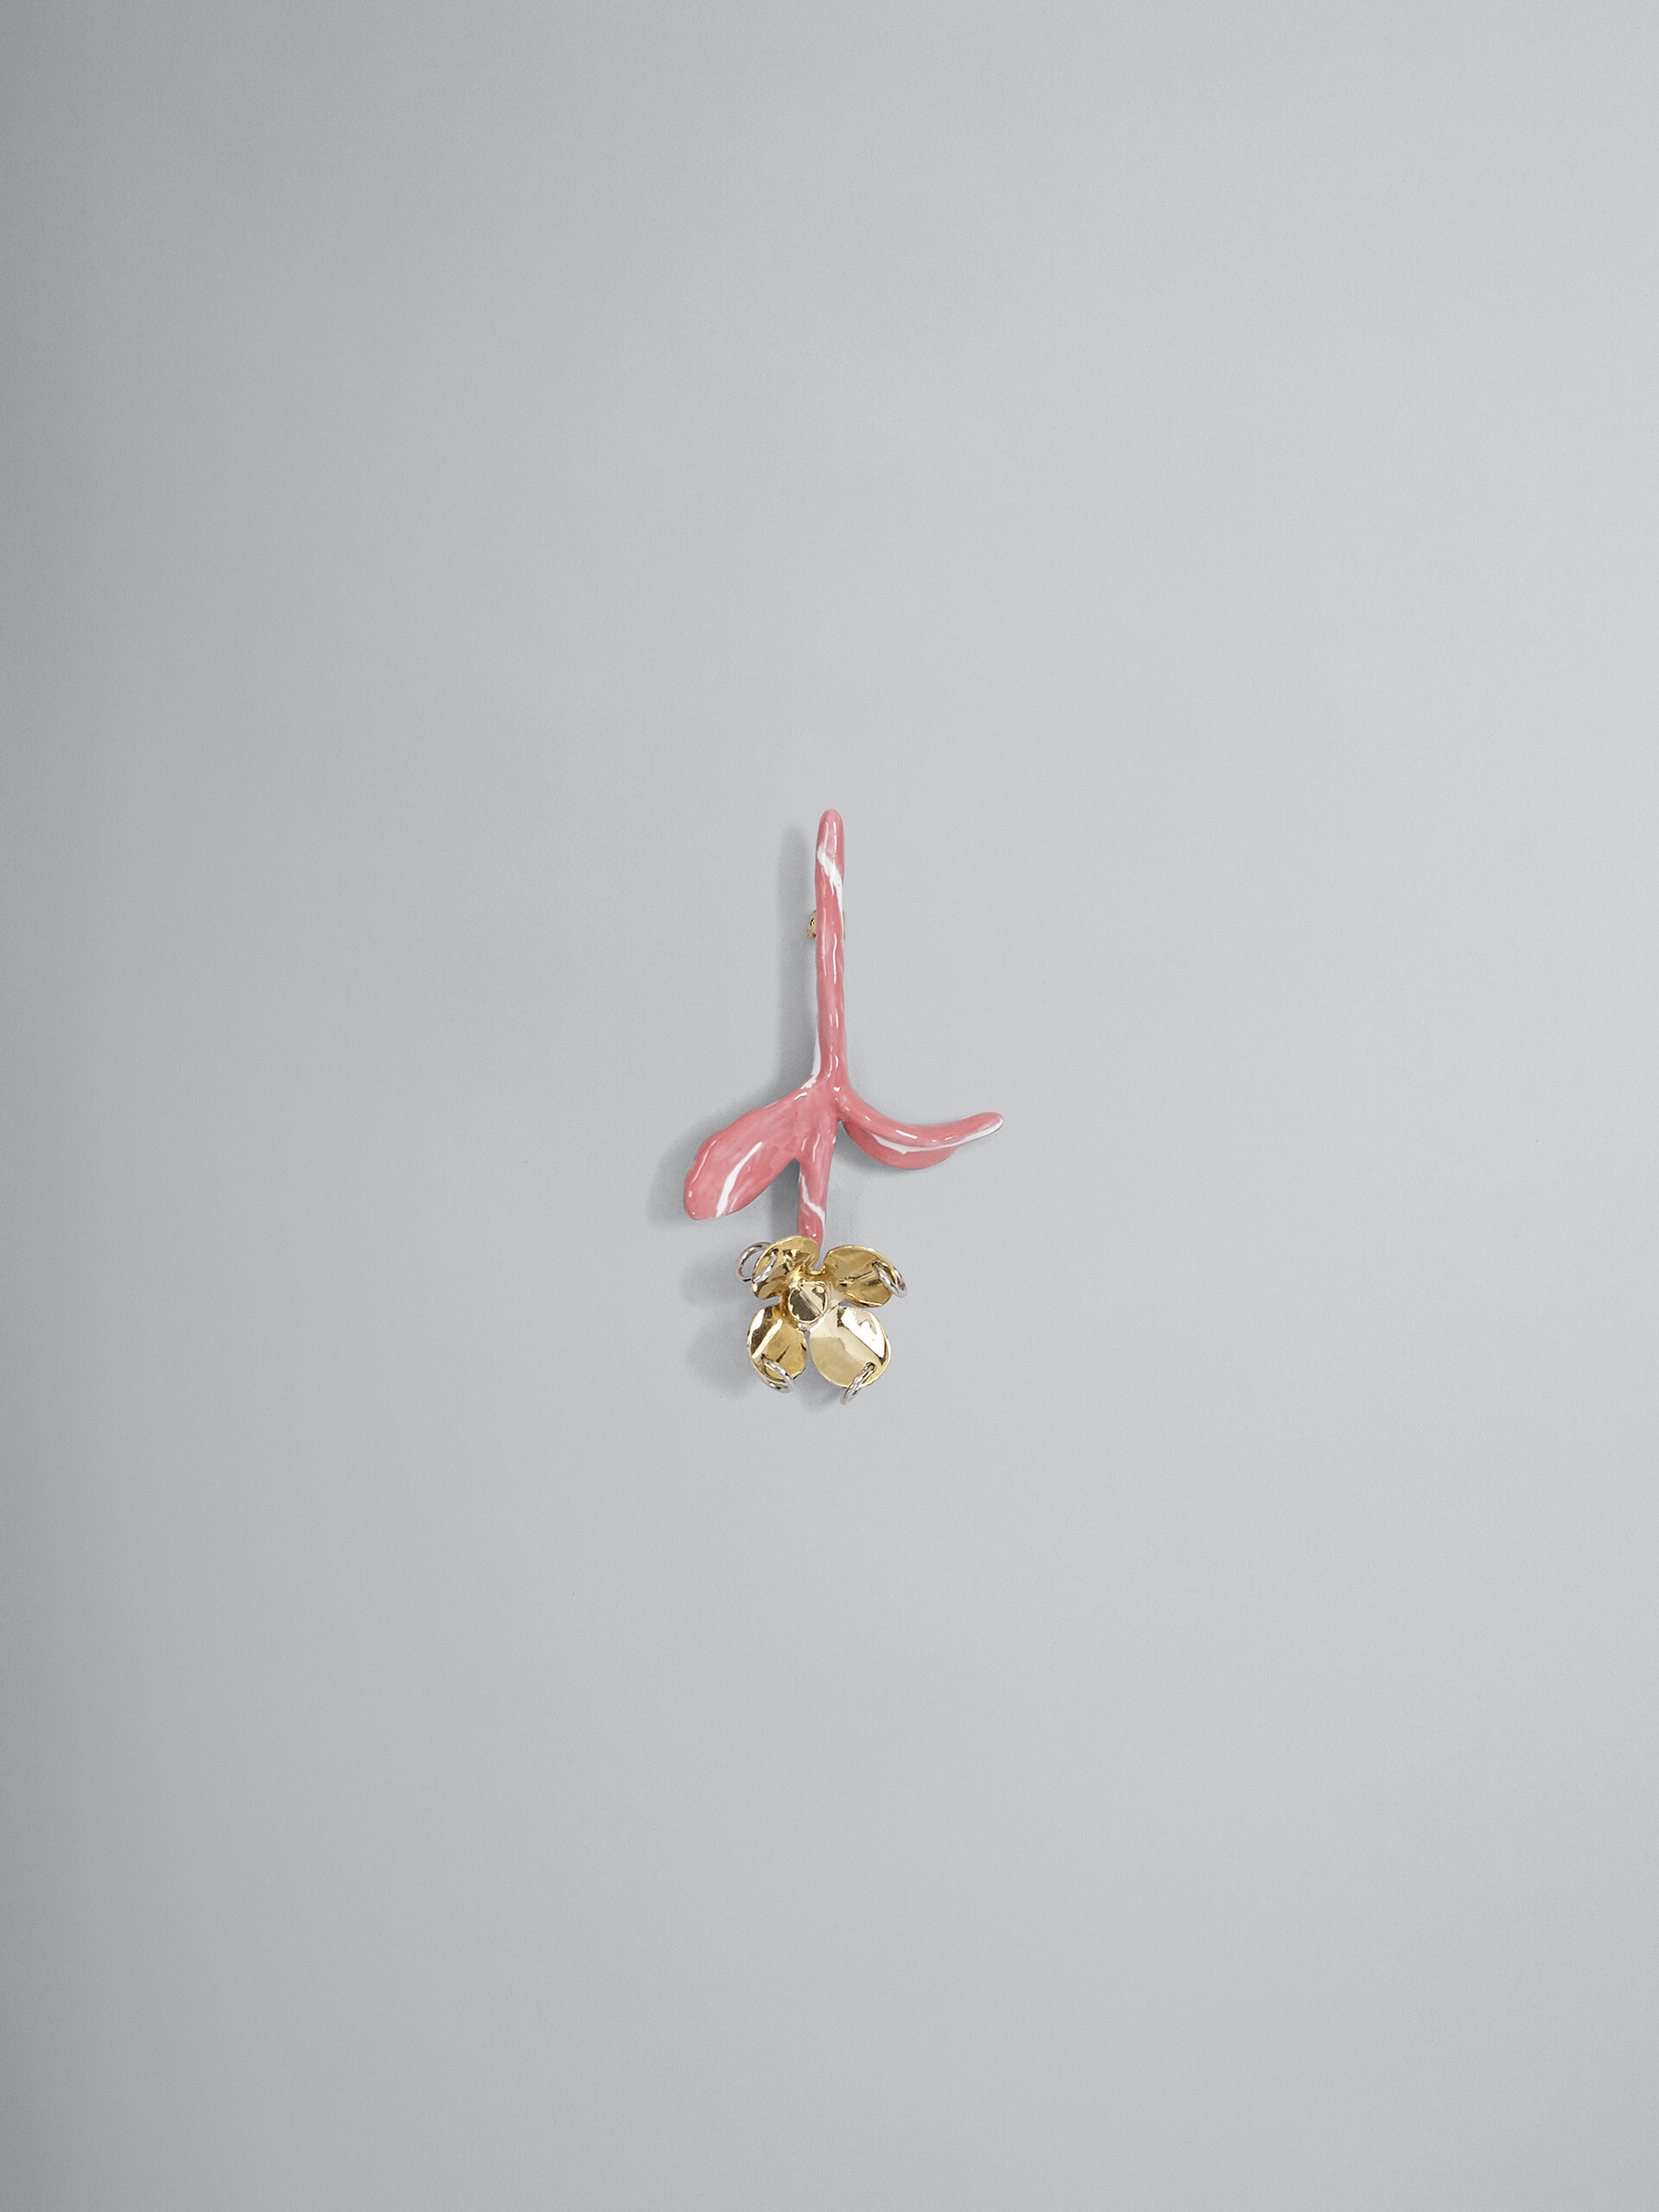 FLOWER pink brooch - Broach - Image 1